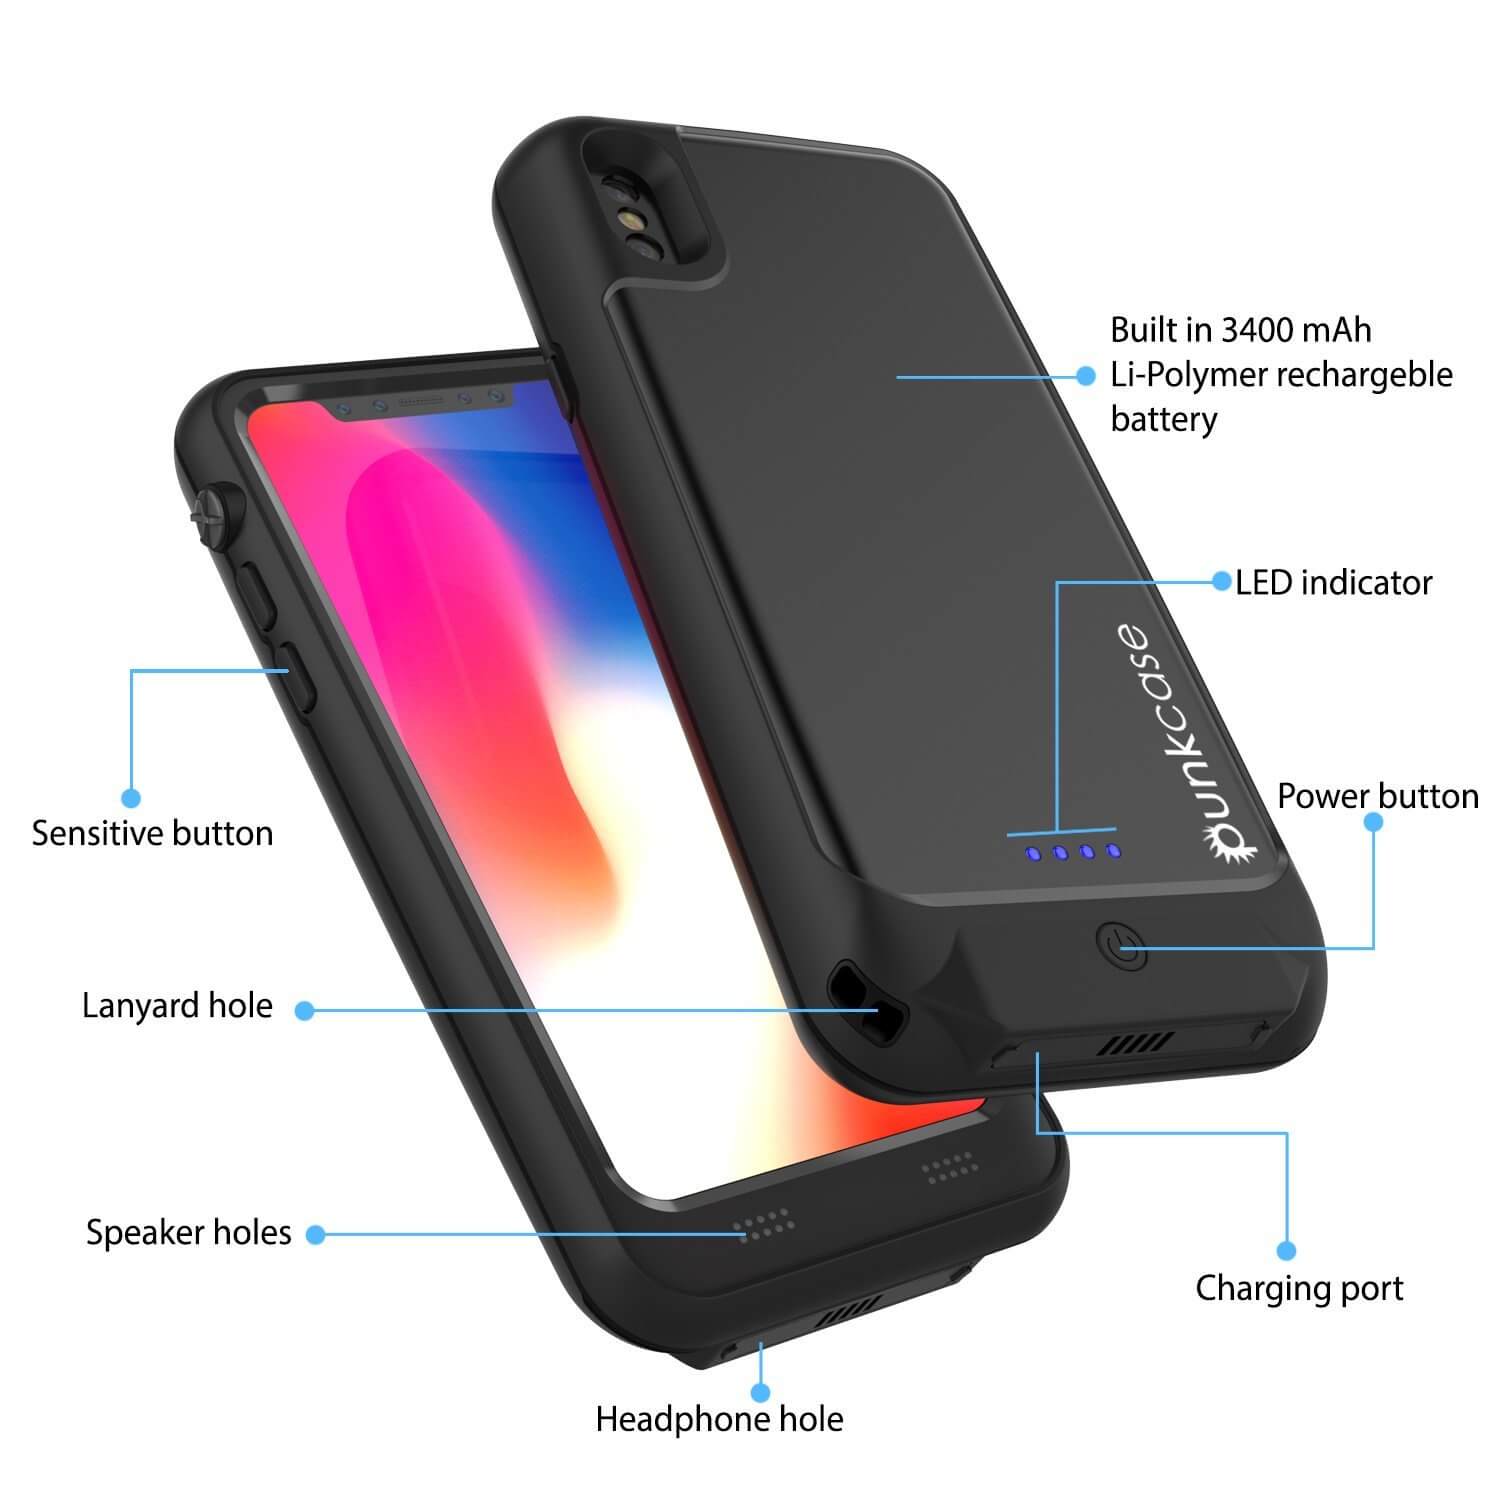 PunkJuice iPhone X Battery Case, Waterproof, [Ultra Slim] [Black]